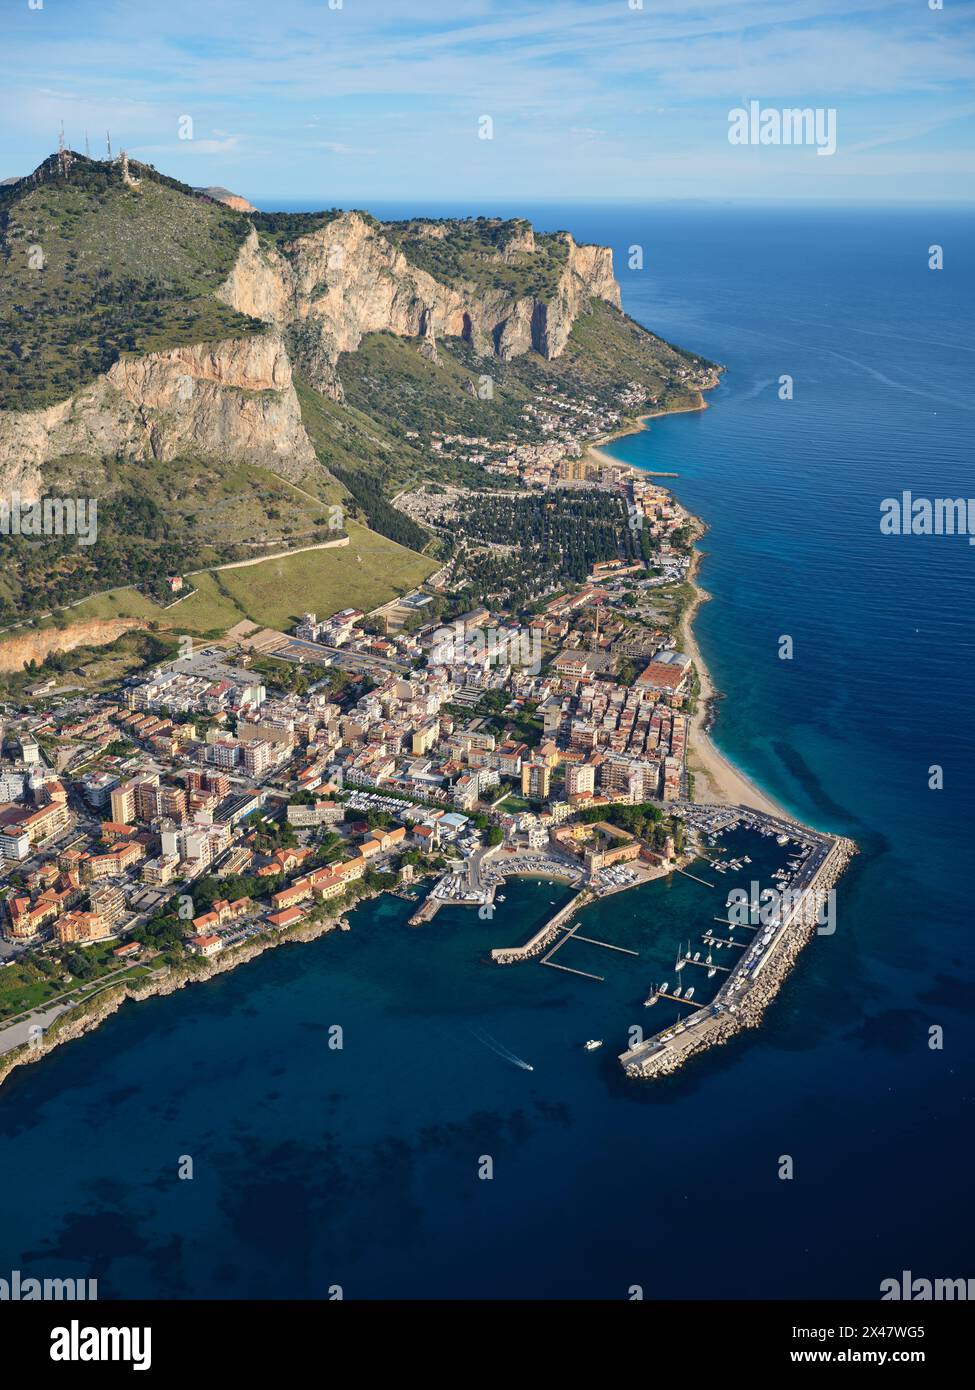 LUFTAUFNAHME. Der Yachthafen von Arenella mit Monte Pellegrino. Palermo, Provinz Palermo, Sizilien, Italien. Stockfoto